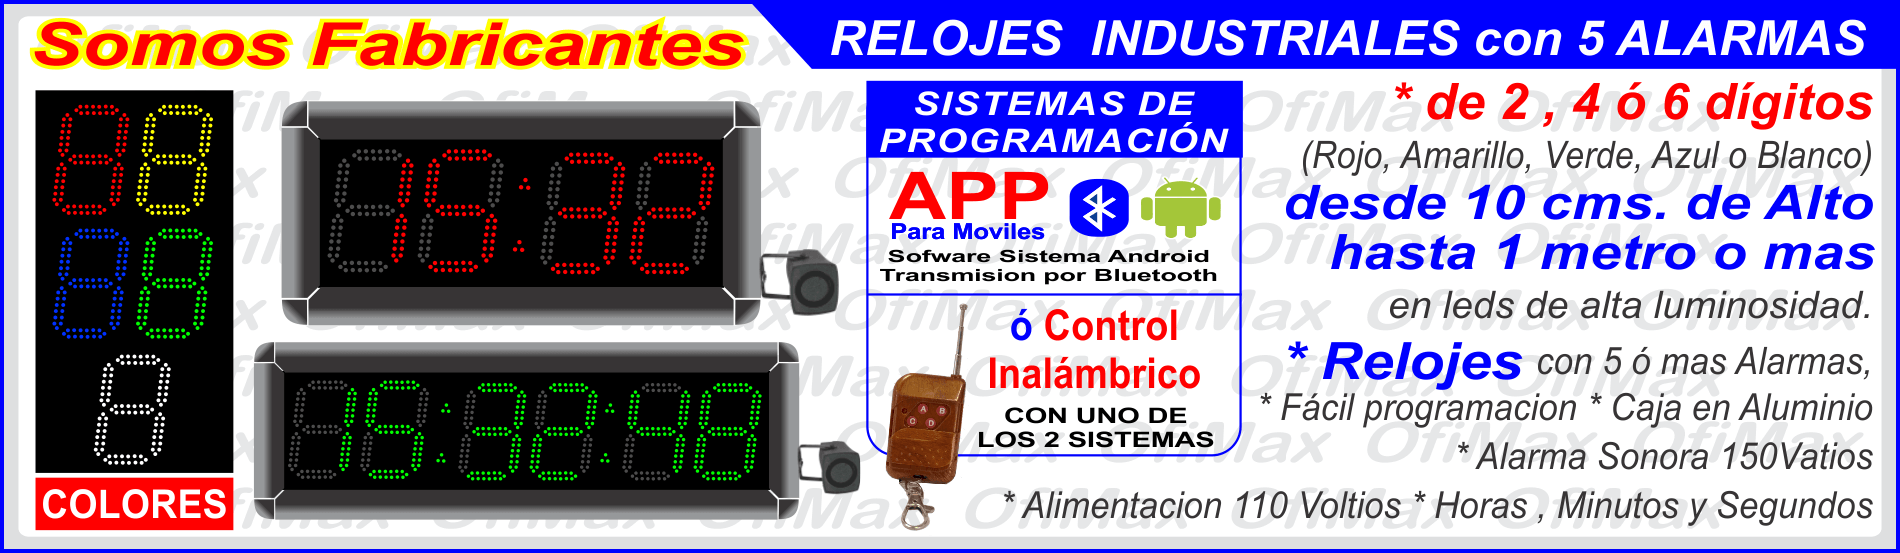 relojes y cronometros digitales industriales, bogota, colombia